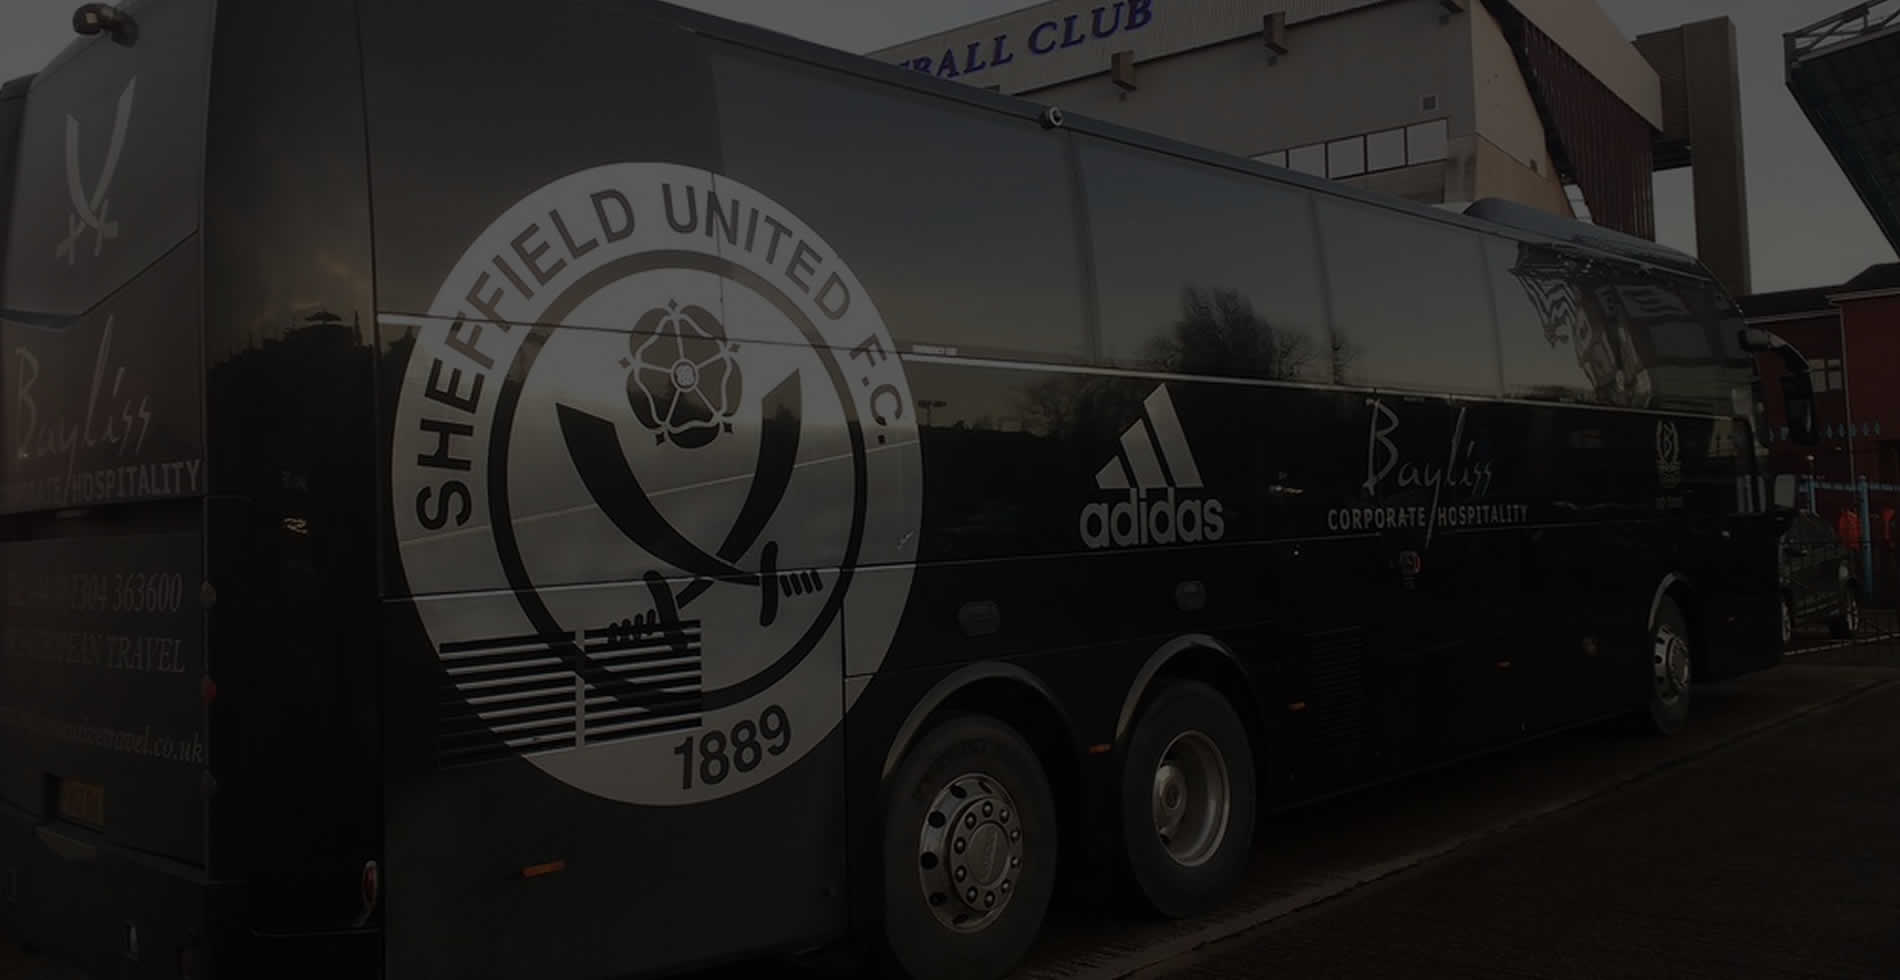 Sheffield united team coach